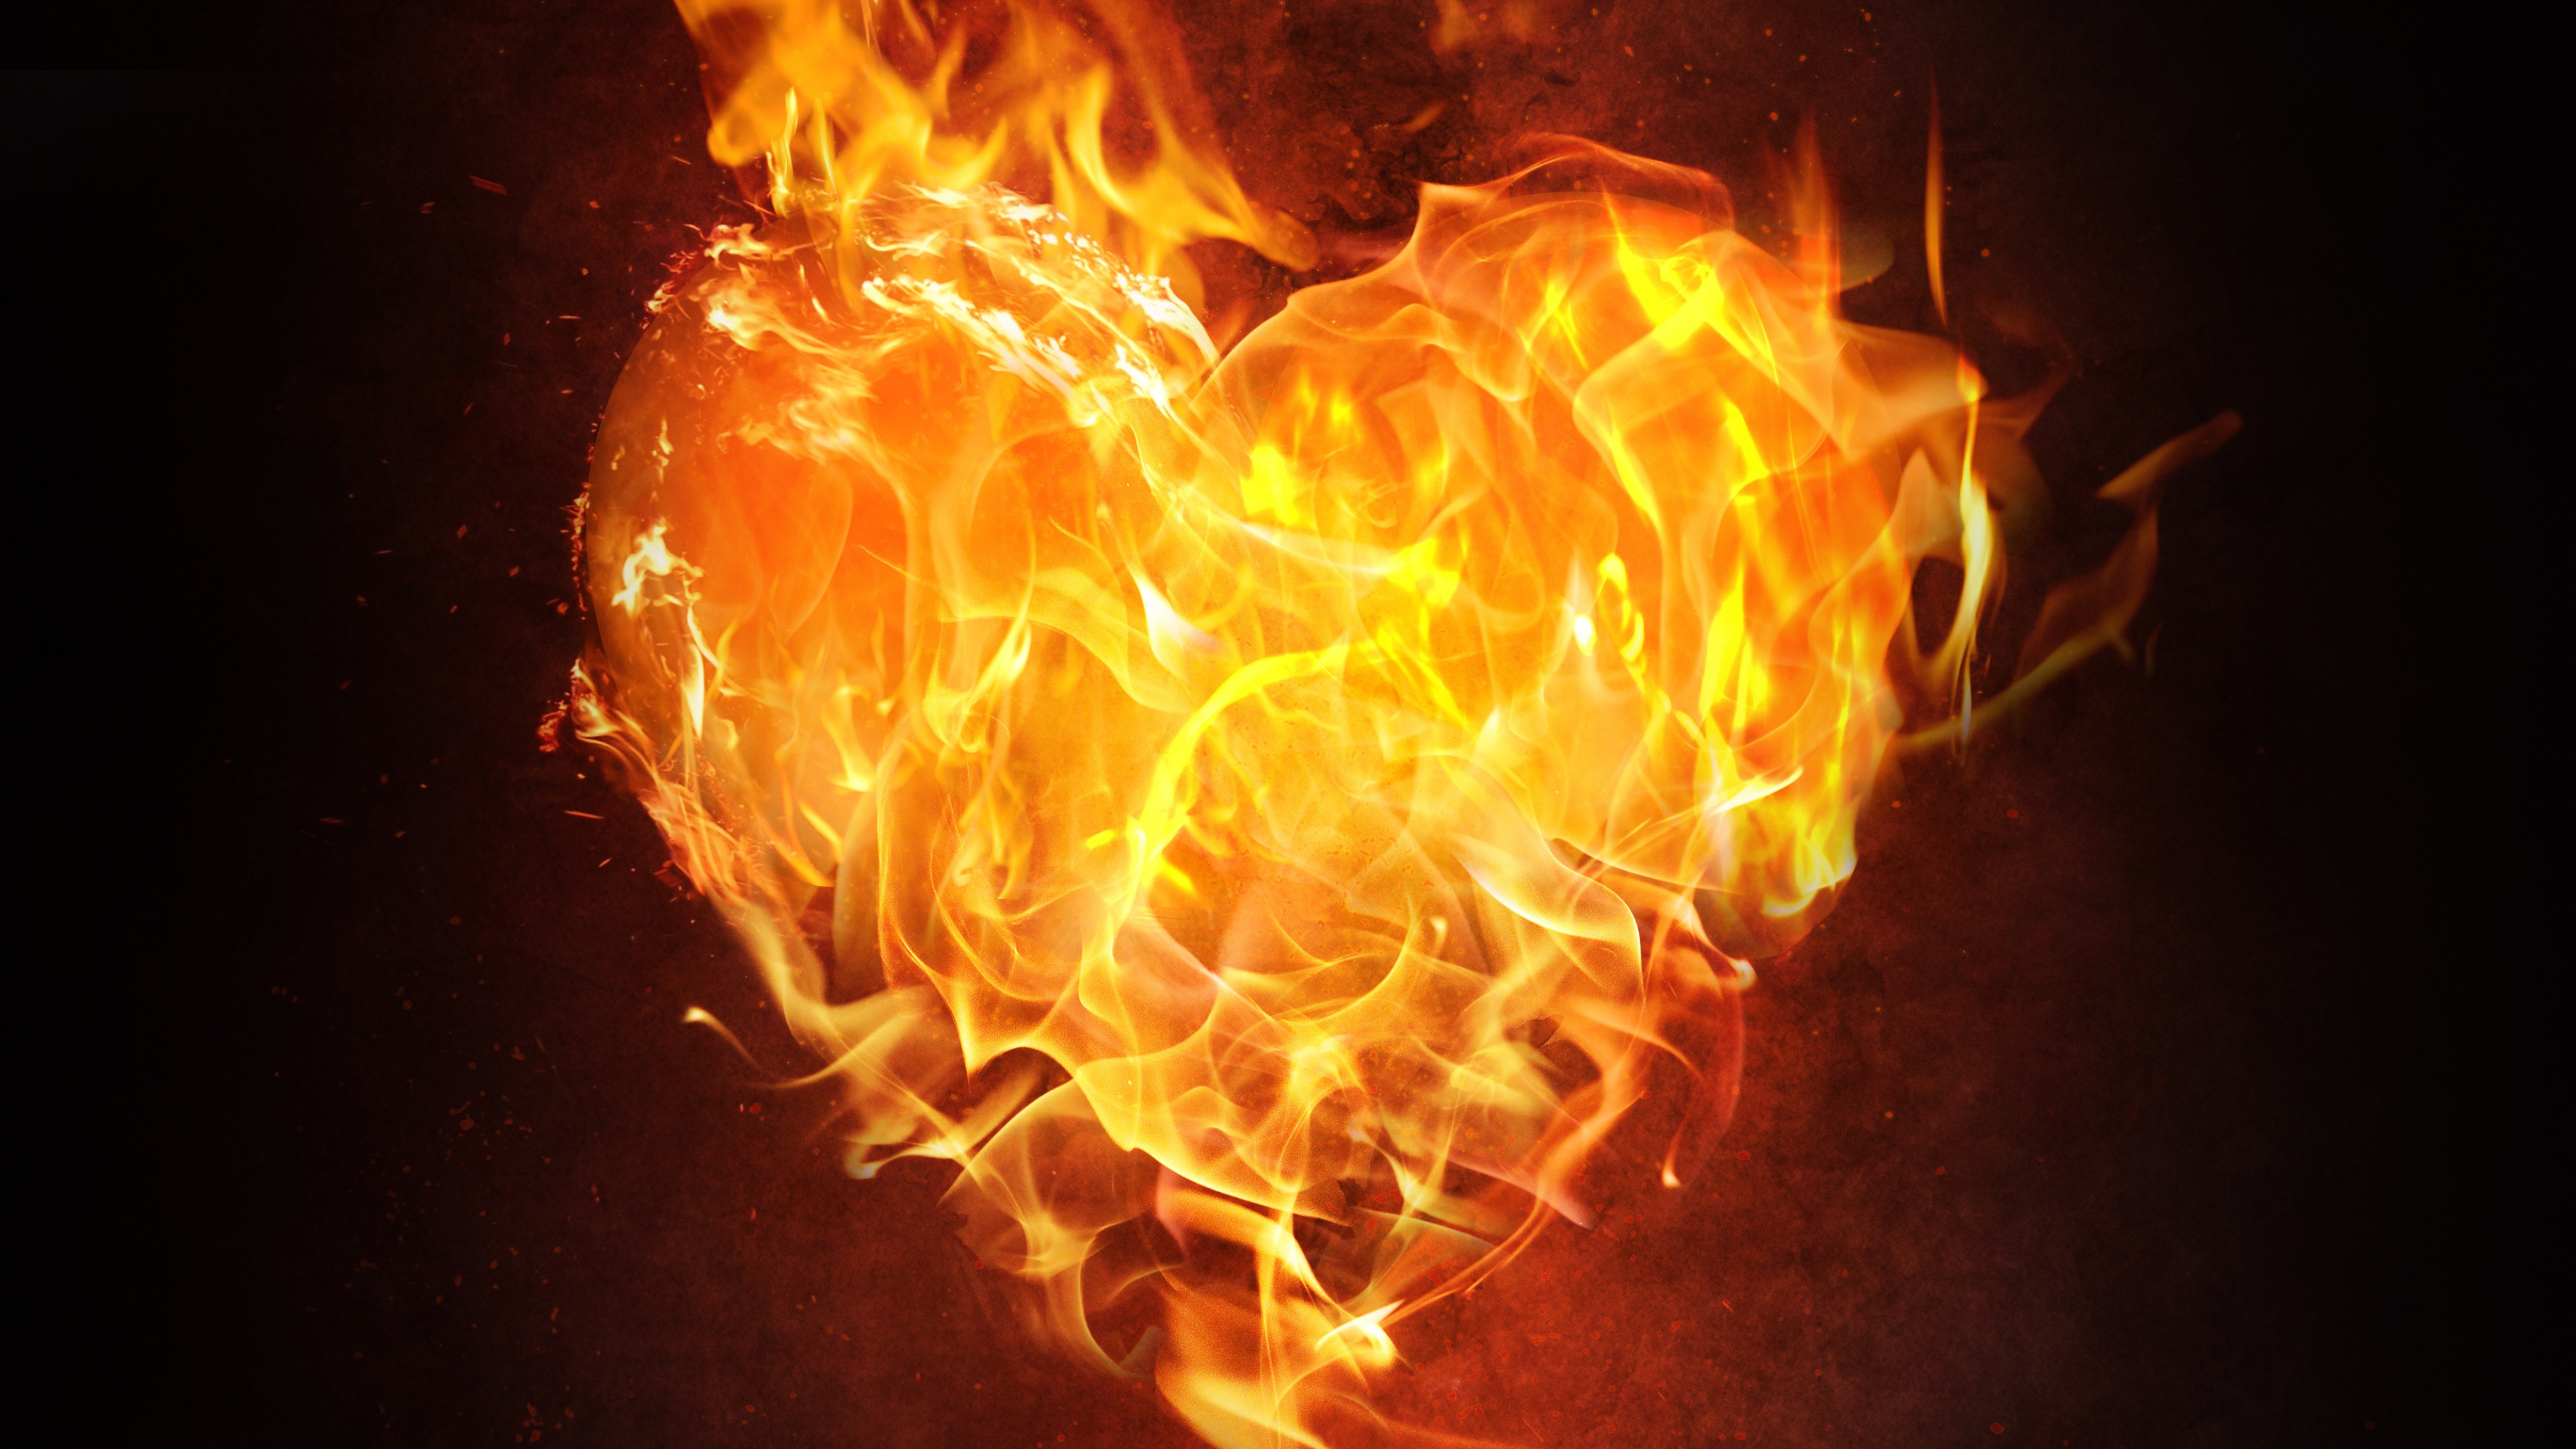 Flame, Fire, Heart, Heat, Orange. Wallpaper in 3840x2160 Resolution